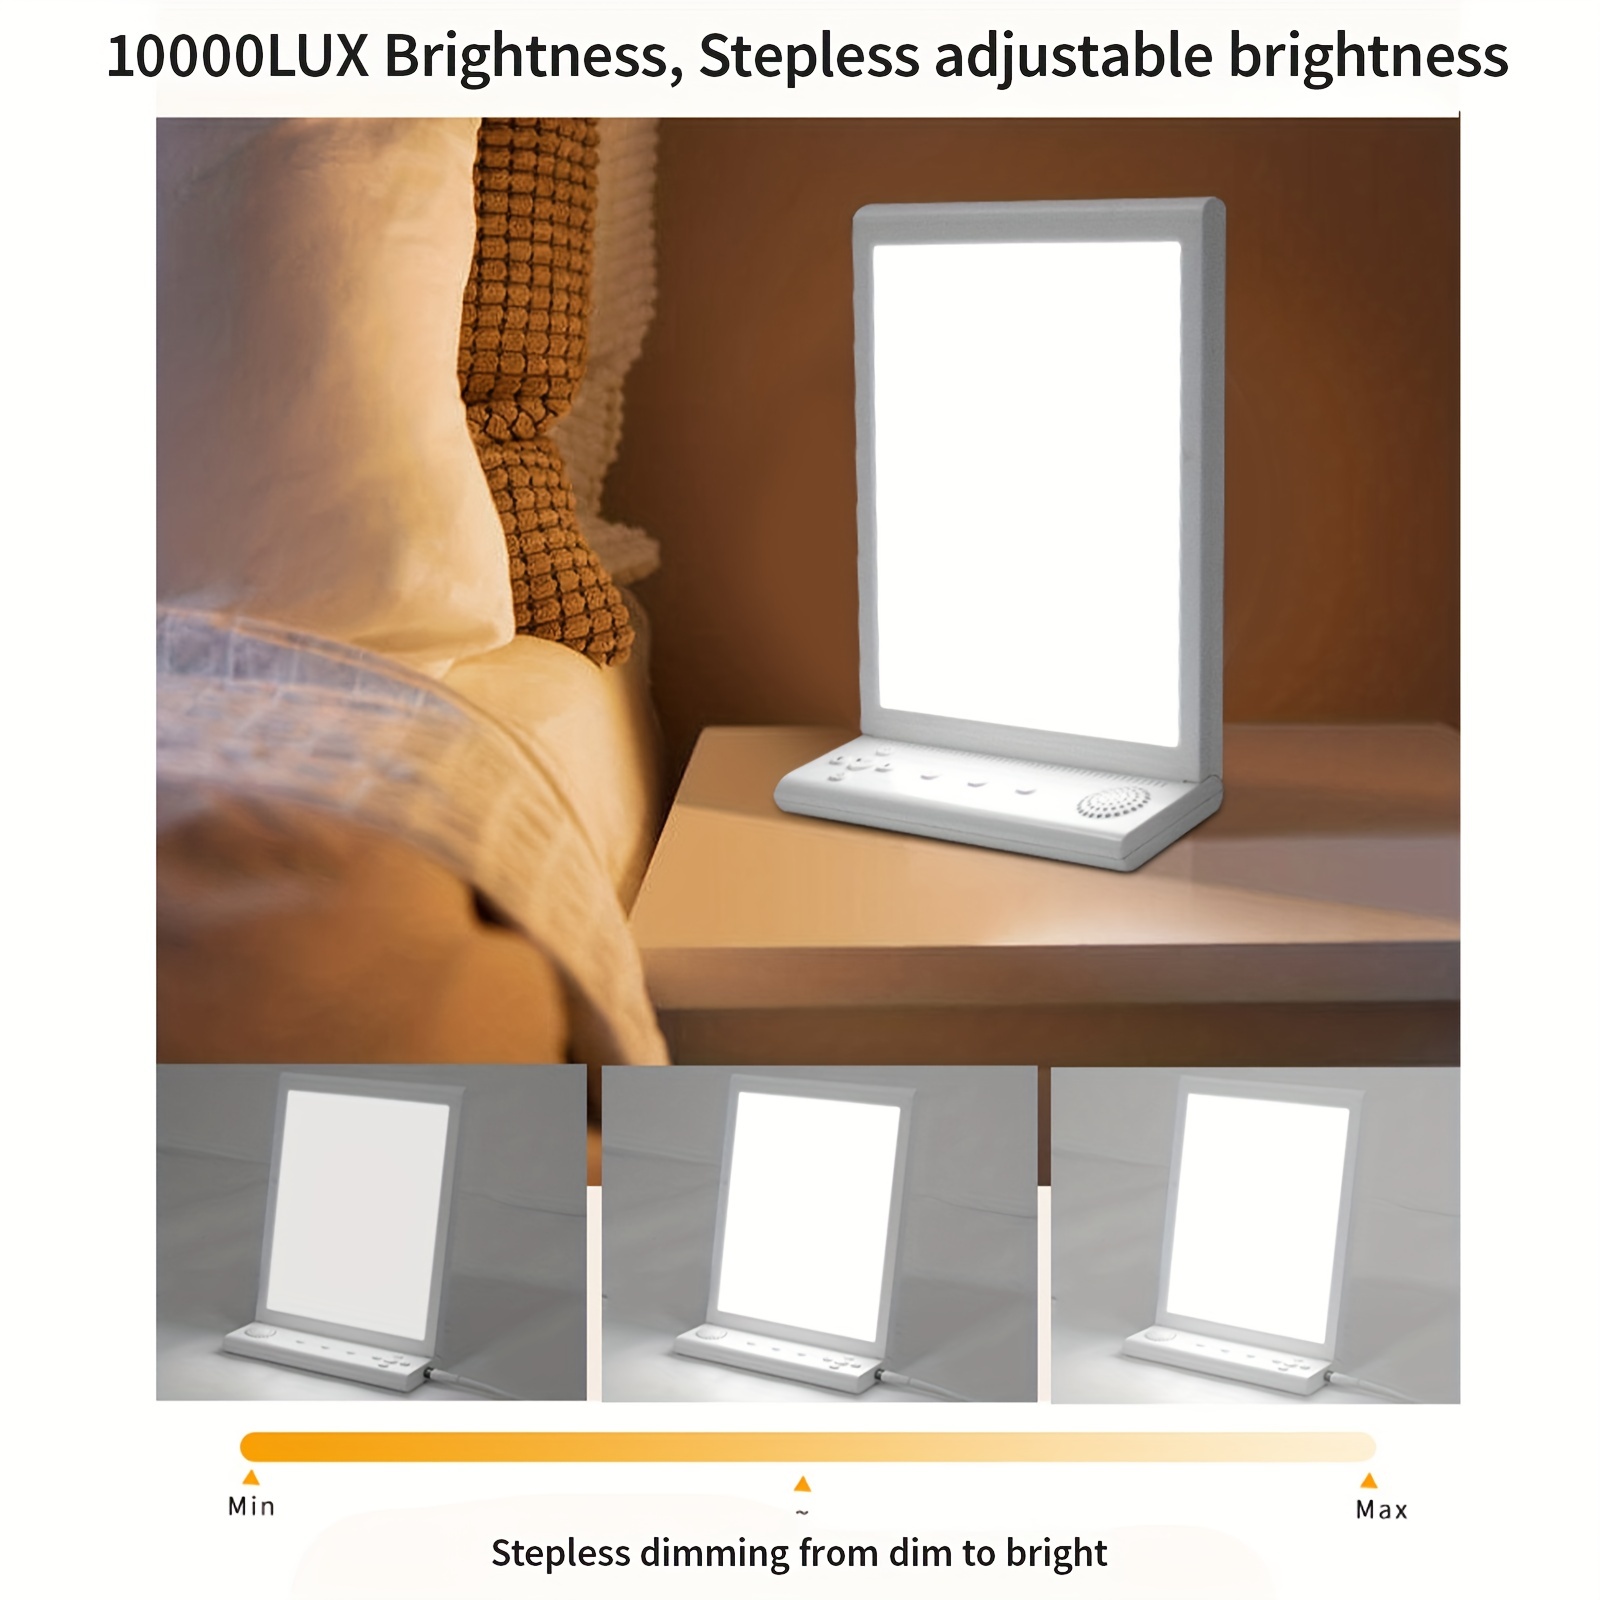 Lampe lumière du jour,lampe de luminothérapie 10000 Lux sans UV,lampe  lumière du jour avec 3 températures de couleur,4 minuteries et 5 intensités  lumineuses réglables et fonction mémoire(White) en destockage et  reconditionné chez